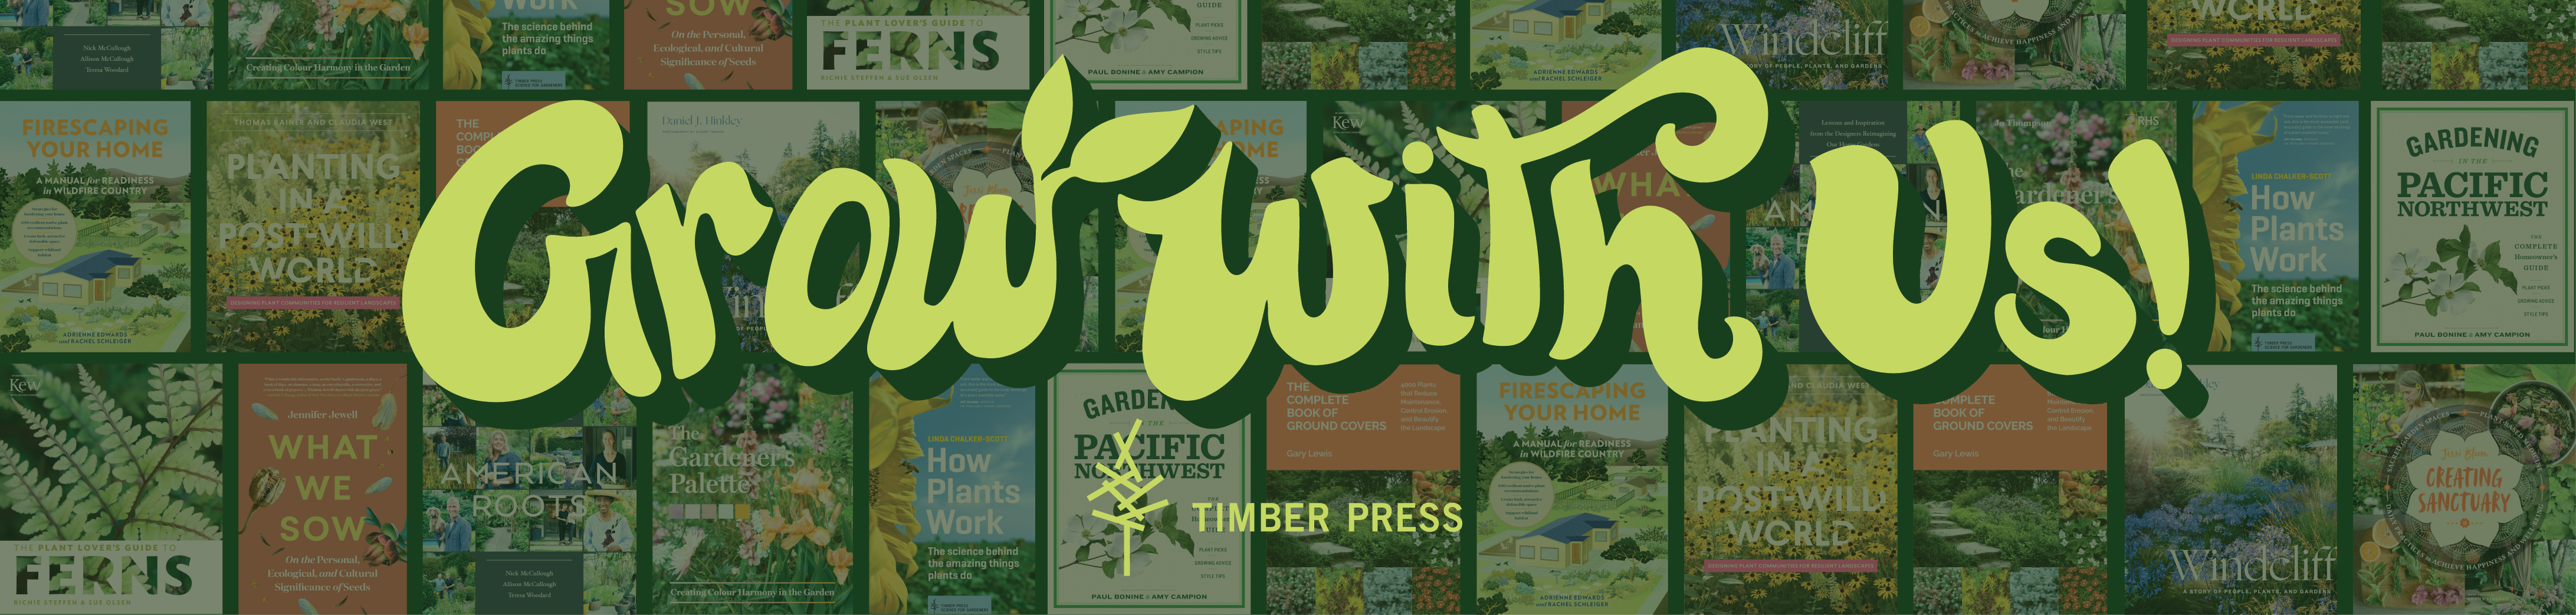 Northwest Flower and Garden Show - Timber Press